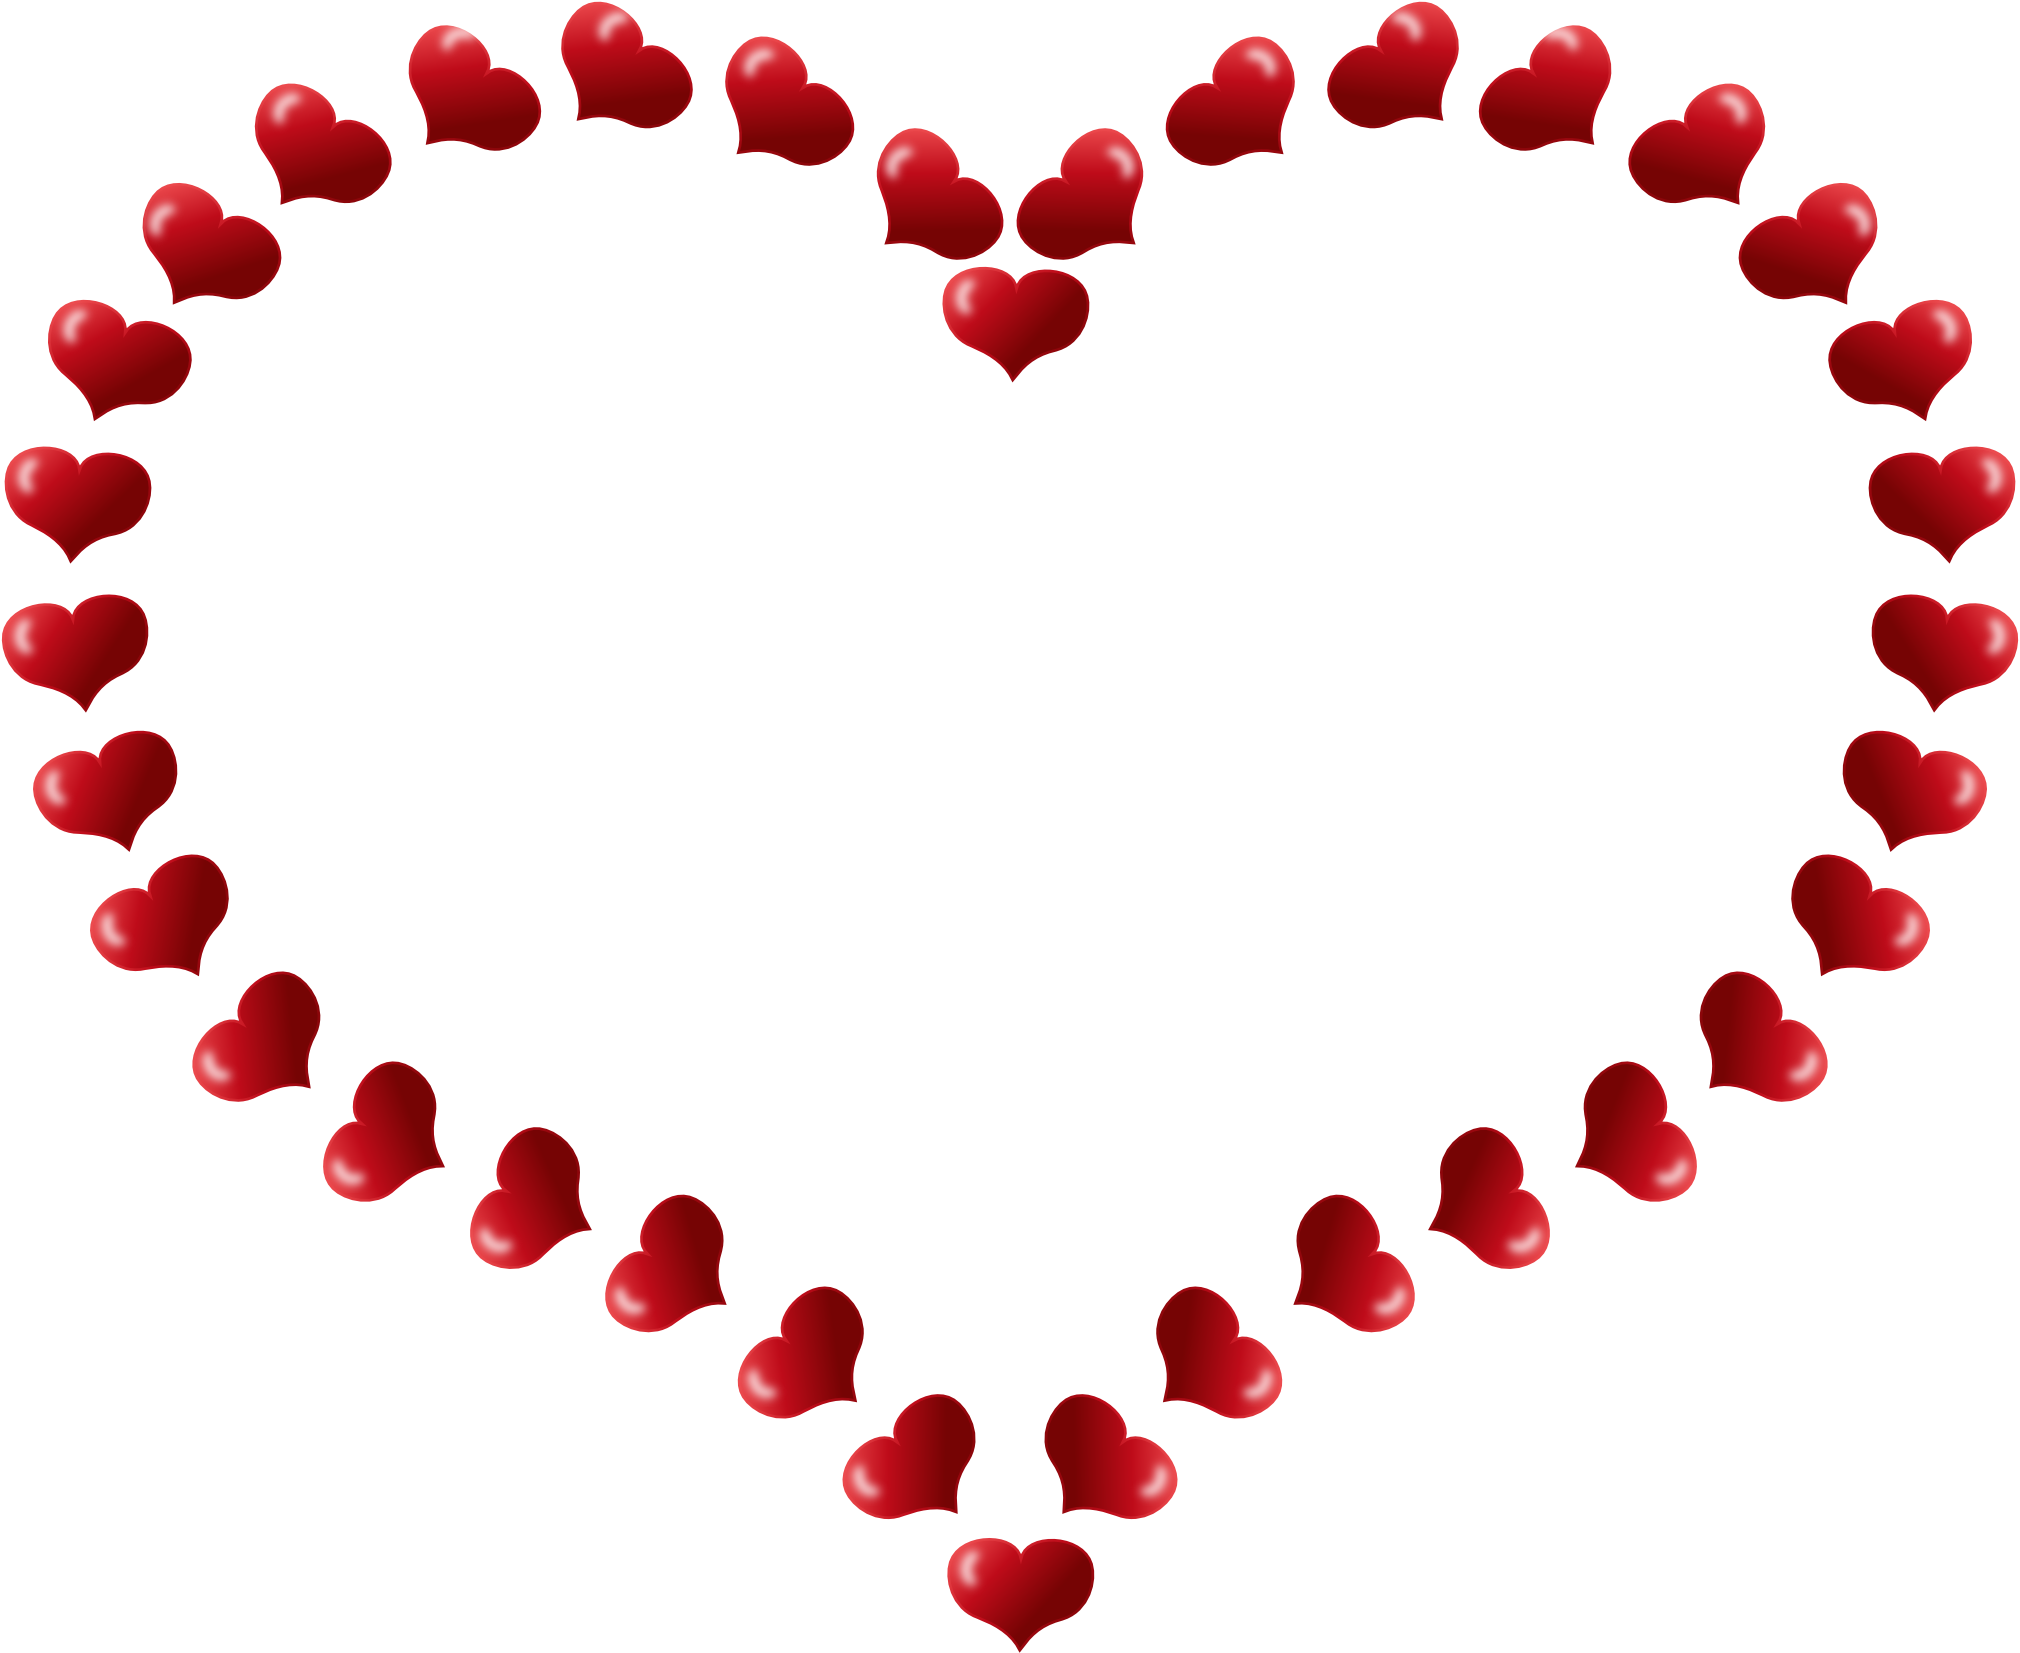 Immagine del cuore del cuore di San Valentino Immagine di alta qualità